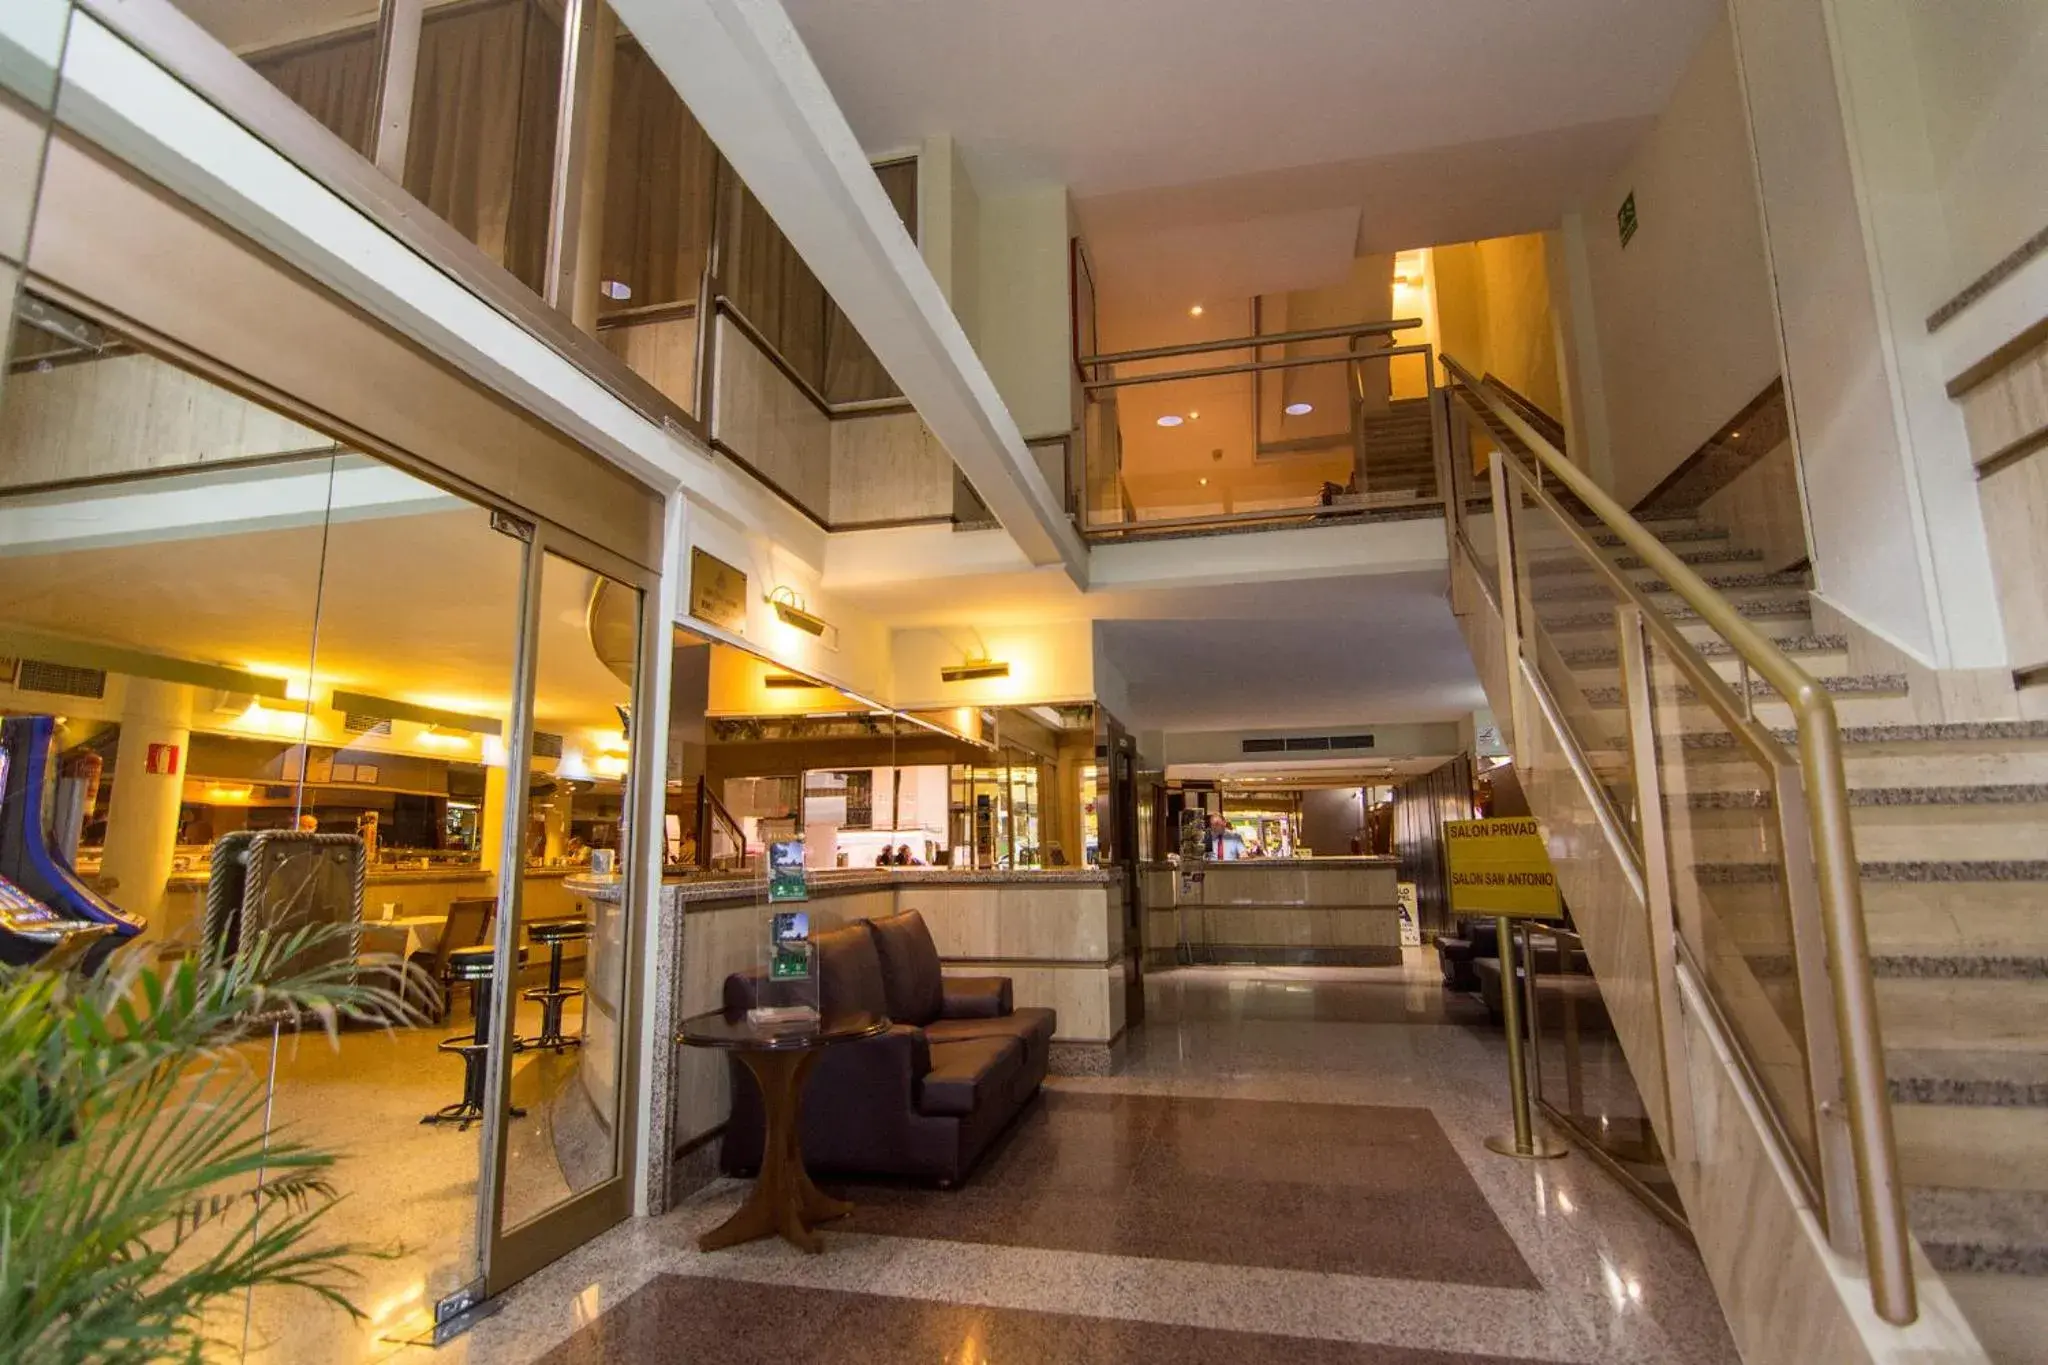 Lobby or reception in Hotel San Antonio